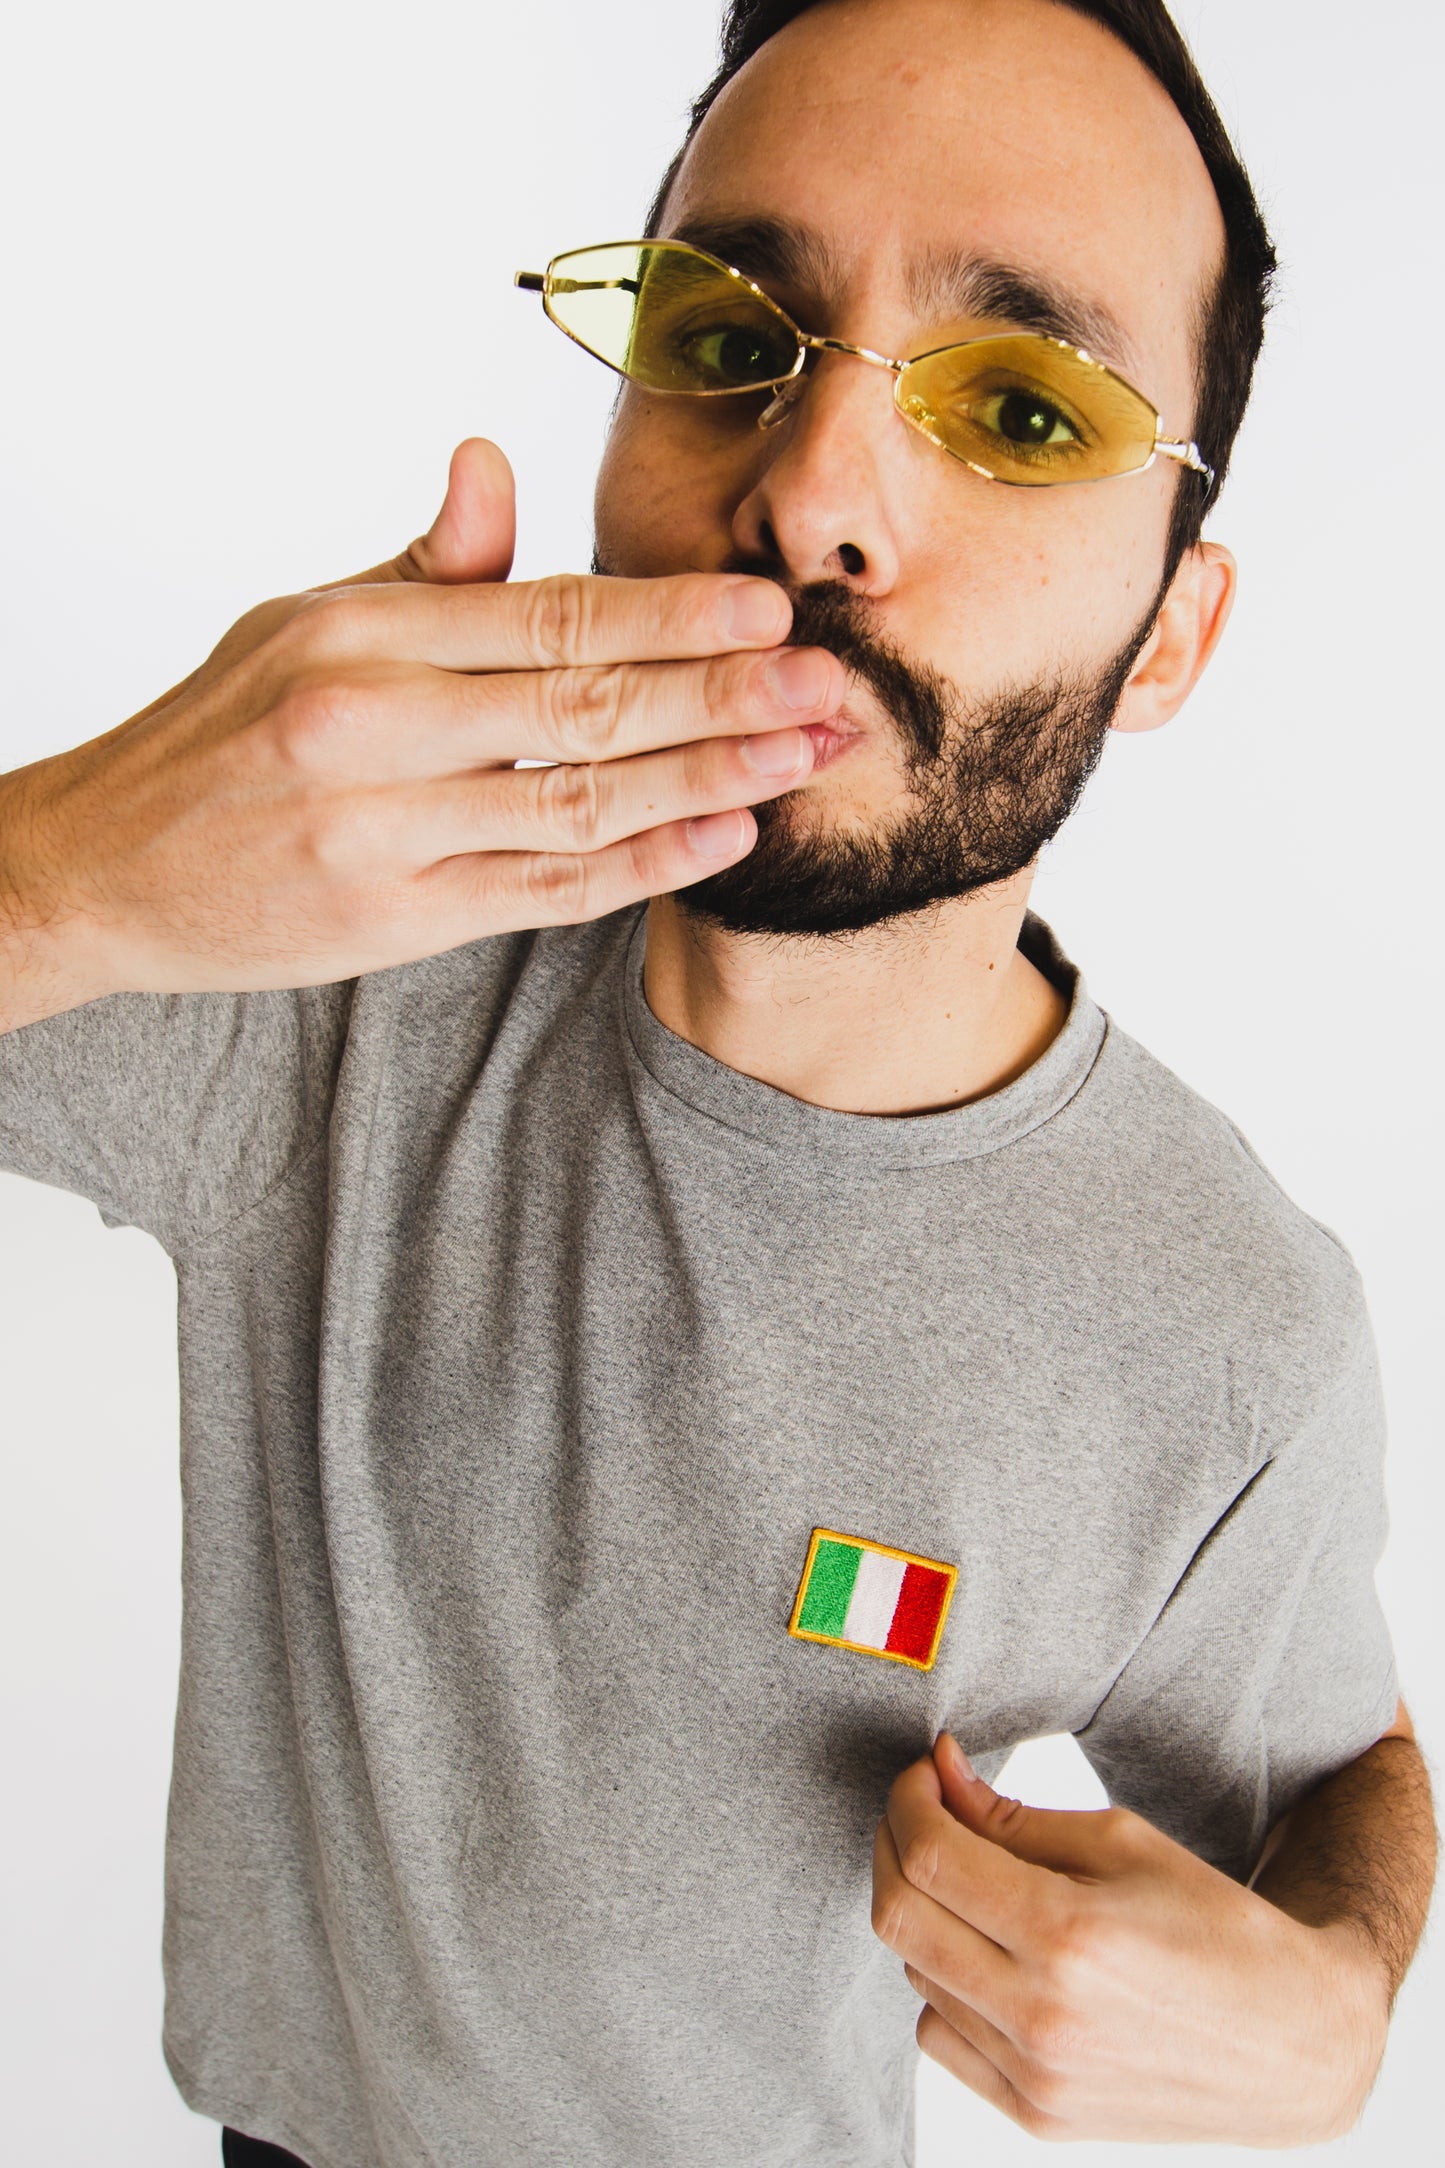 Italie • Mini Flag